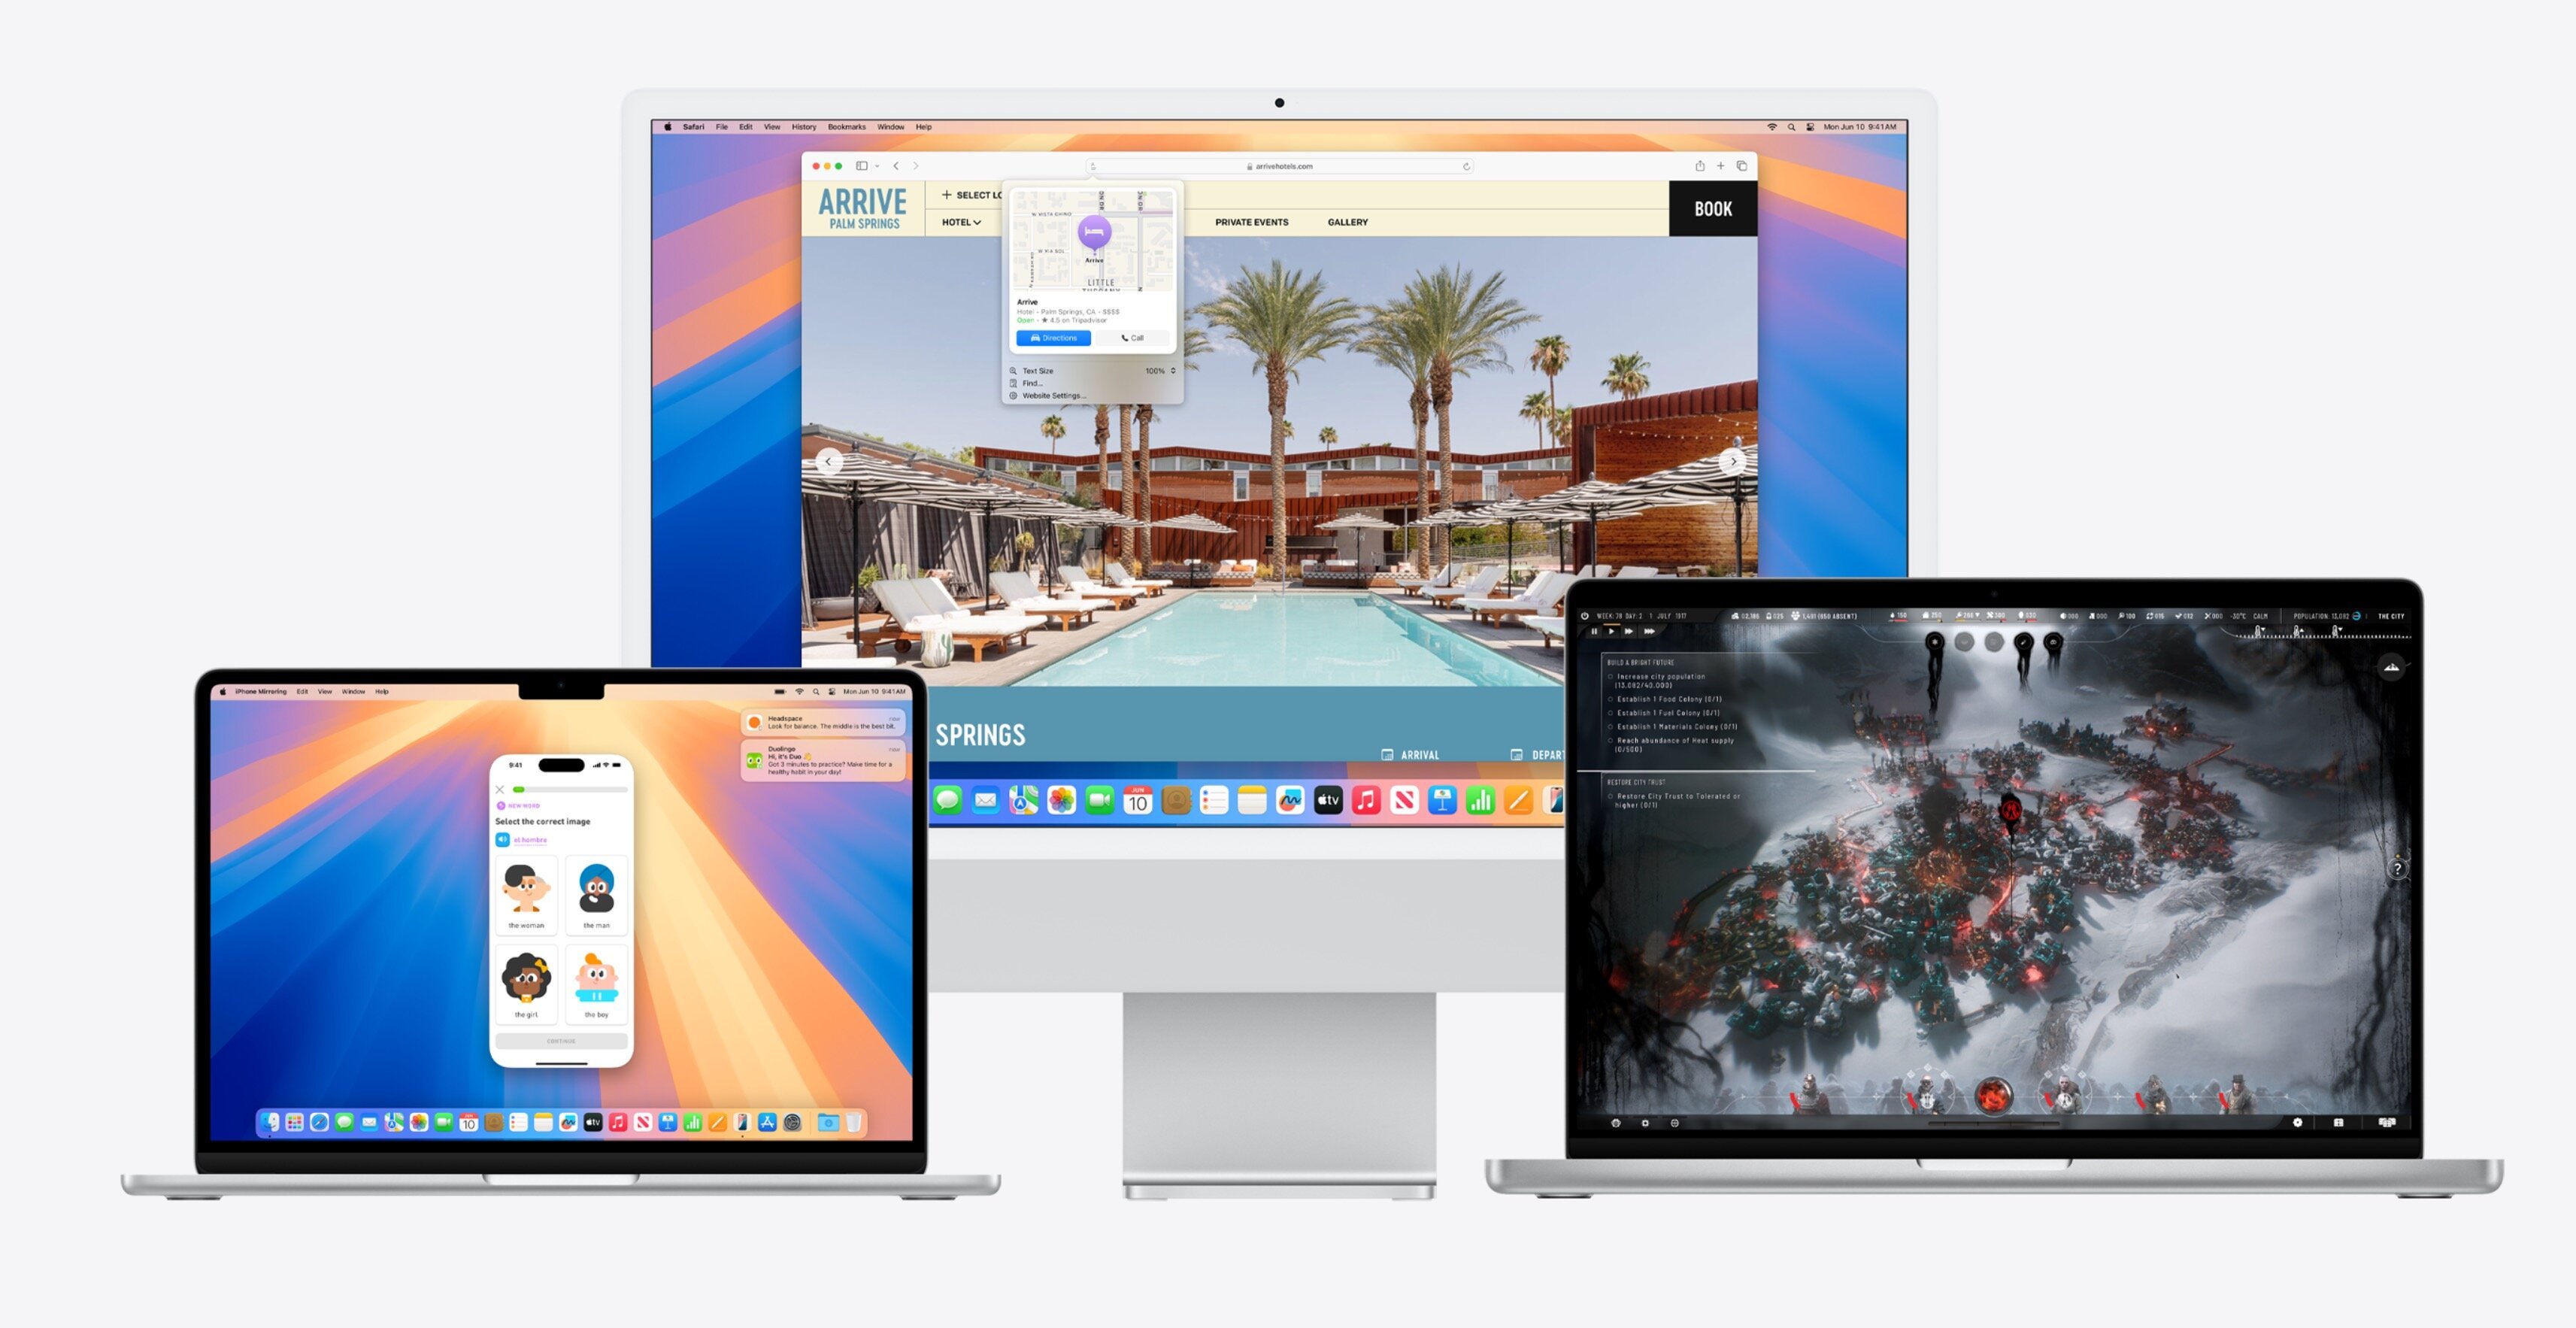 Η Apple ανακοινώνει το macOS Sequoia με iPhone mirroring και Apple Intelligence